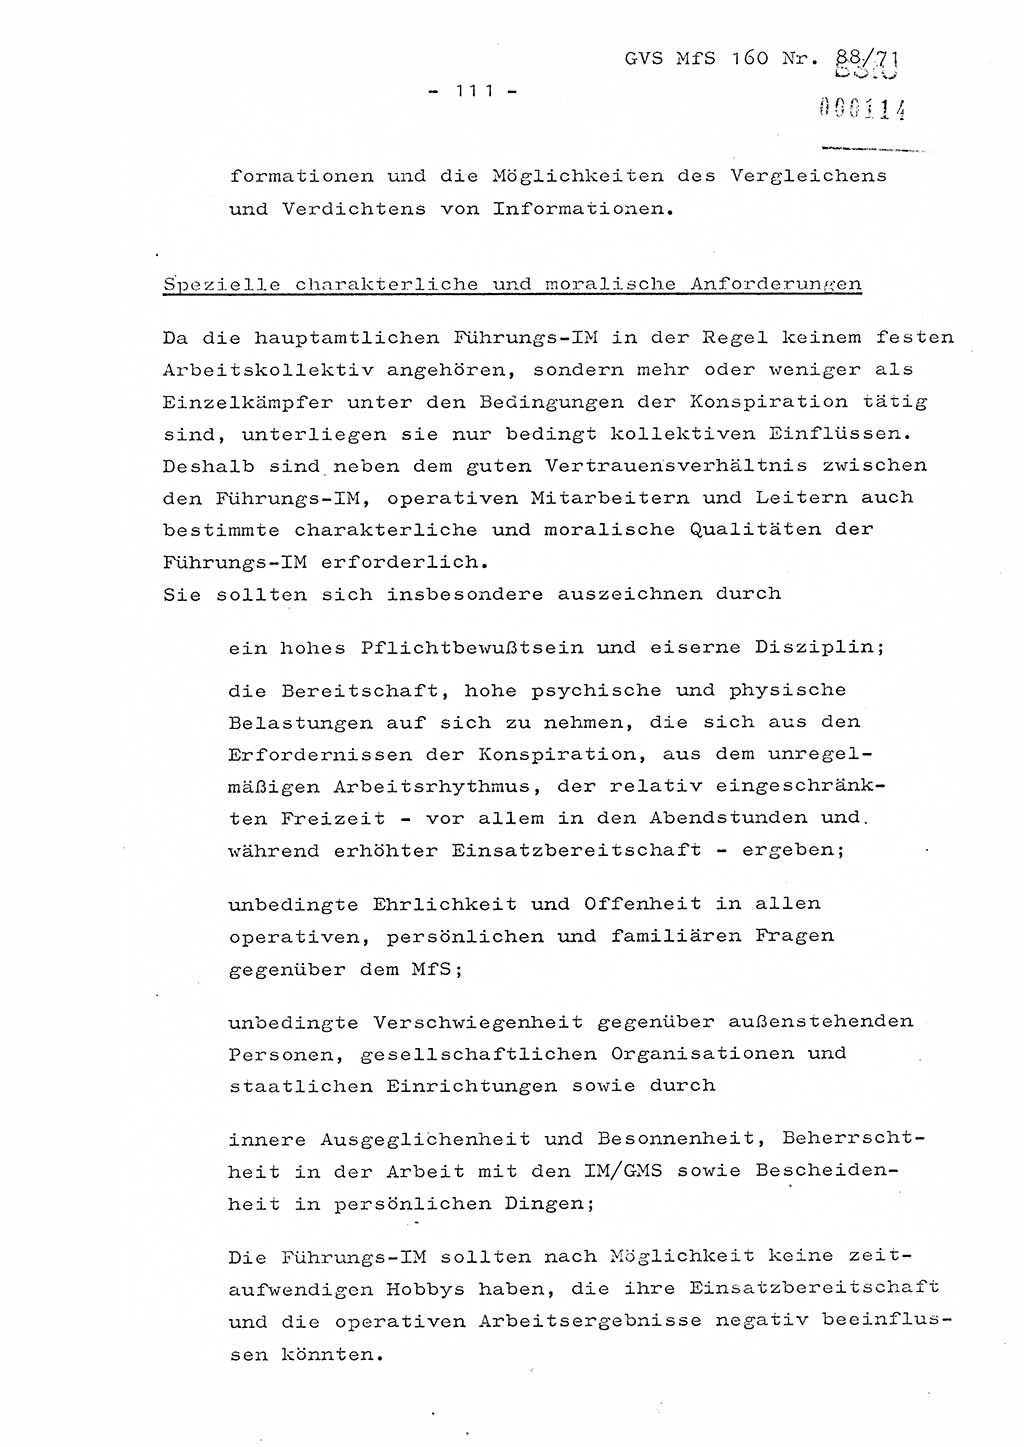 Dissertation Oberstleutnant Josef Schwarz (BV Schwerin), Major Fritz Amm (JHS), Hauptmann Peter Gräßler (JHS), Ministerium für Staatssicherheit (MfS) [Deutsche Demokratische Republik (DDR)], Juristische Hochschule (JHS), Geheime Verschlußsache (GVS) 160-88/71, Potsdam 1972, Seite 111 (Diss. MfS DDR JHS GVS 160-88/71 1972, S. 111)